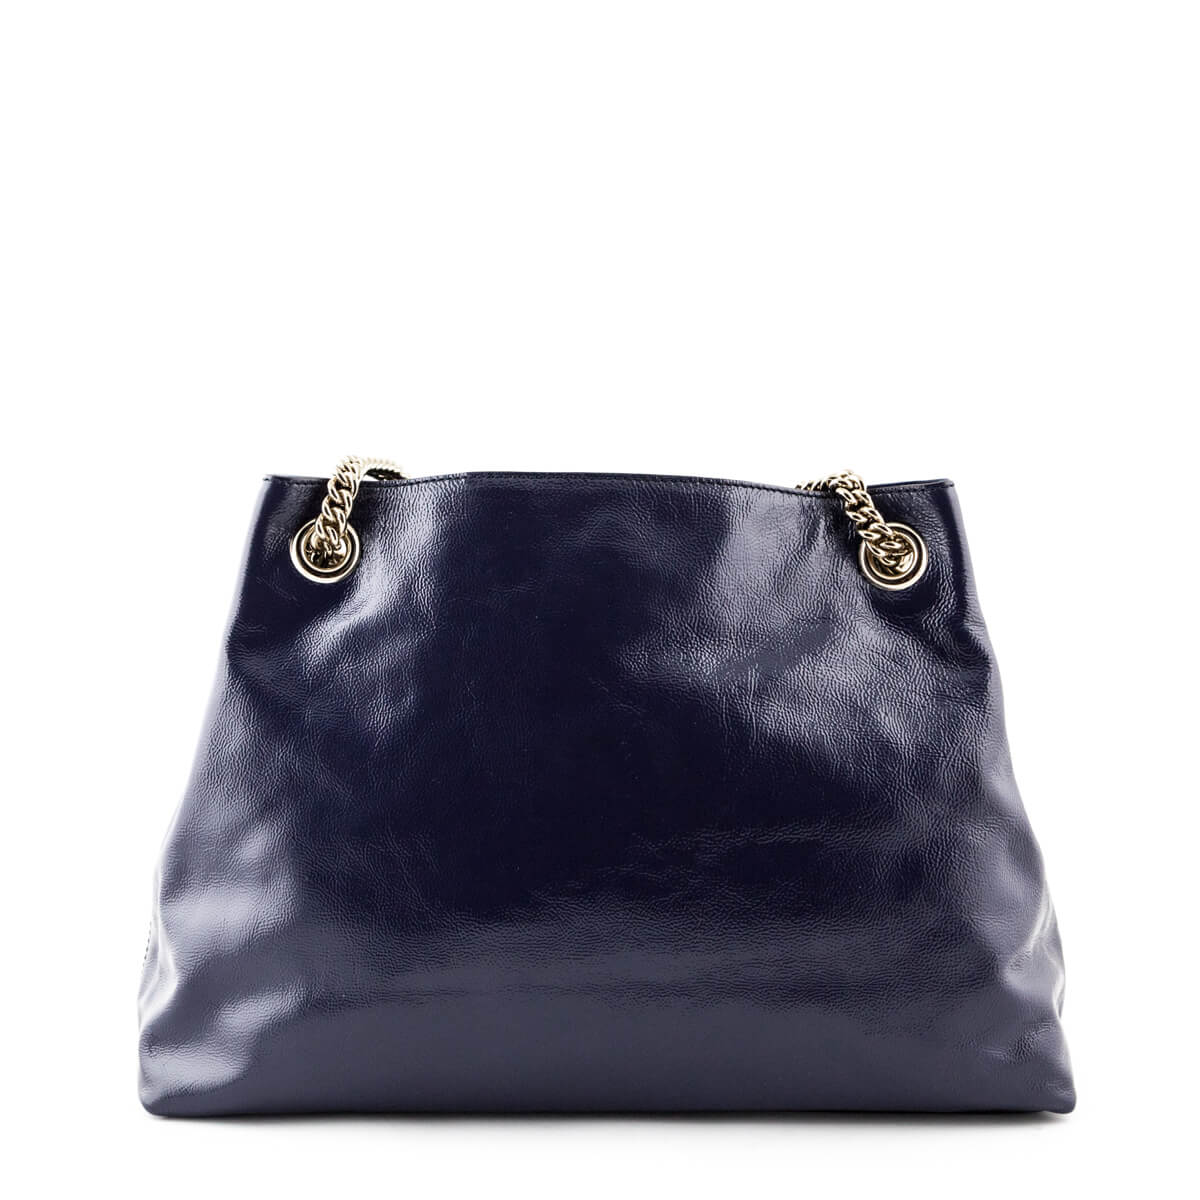 Gucci Midnight Blue Patent Medium Soho Shoulder Bag - Gucci Canada